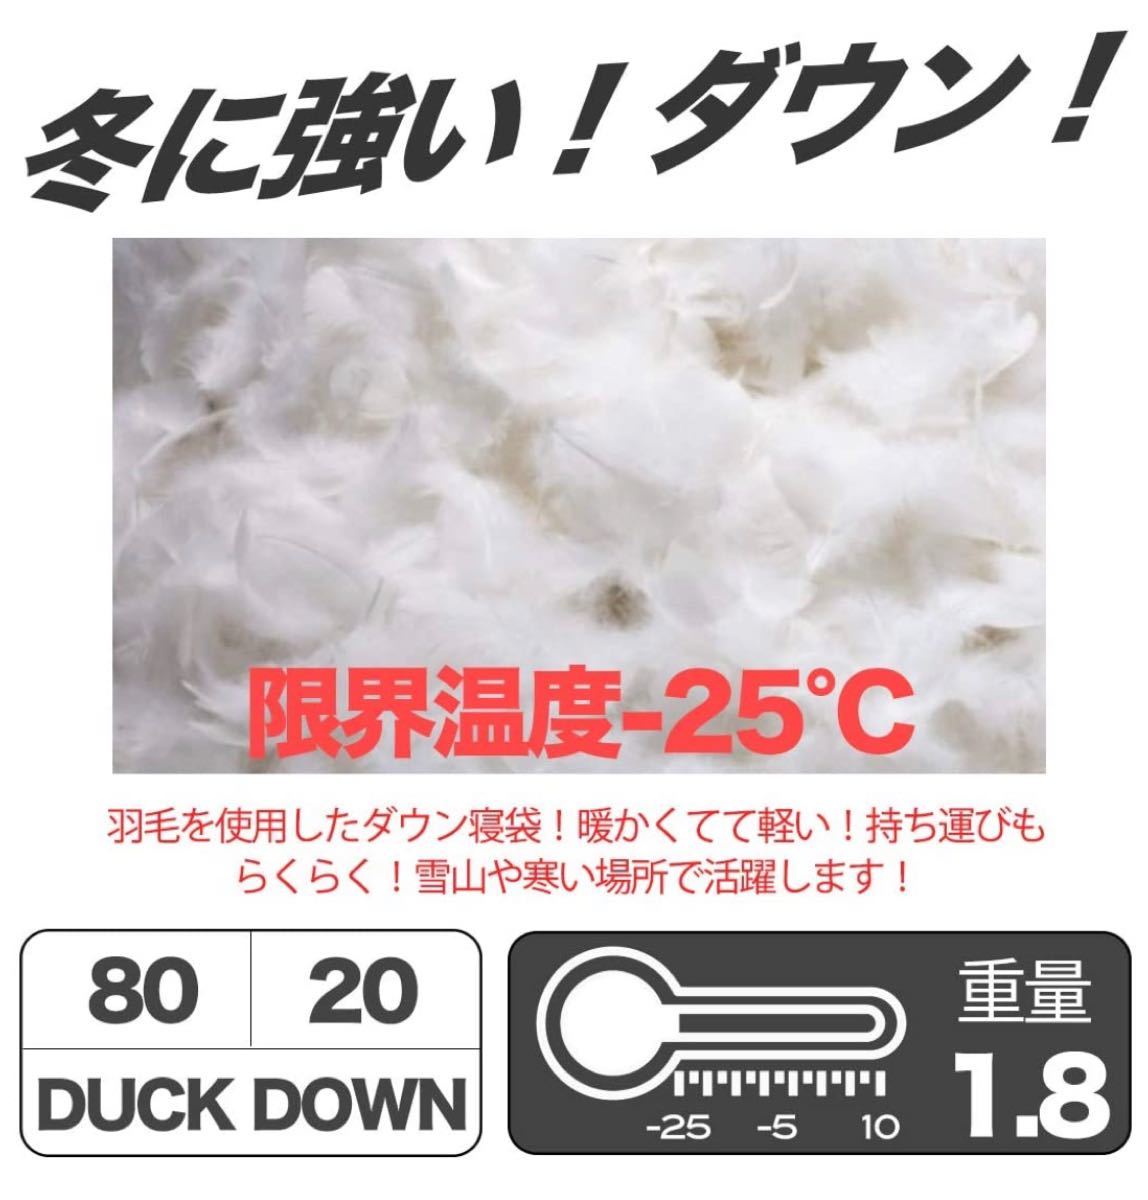 冬用 寝袋 ダックダウン 極暖 -25℃ シュラフ 丸洗い 封筒型 迷彩#4